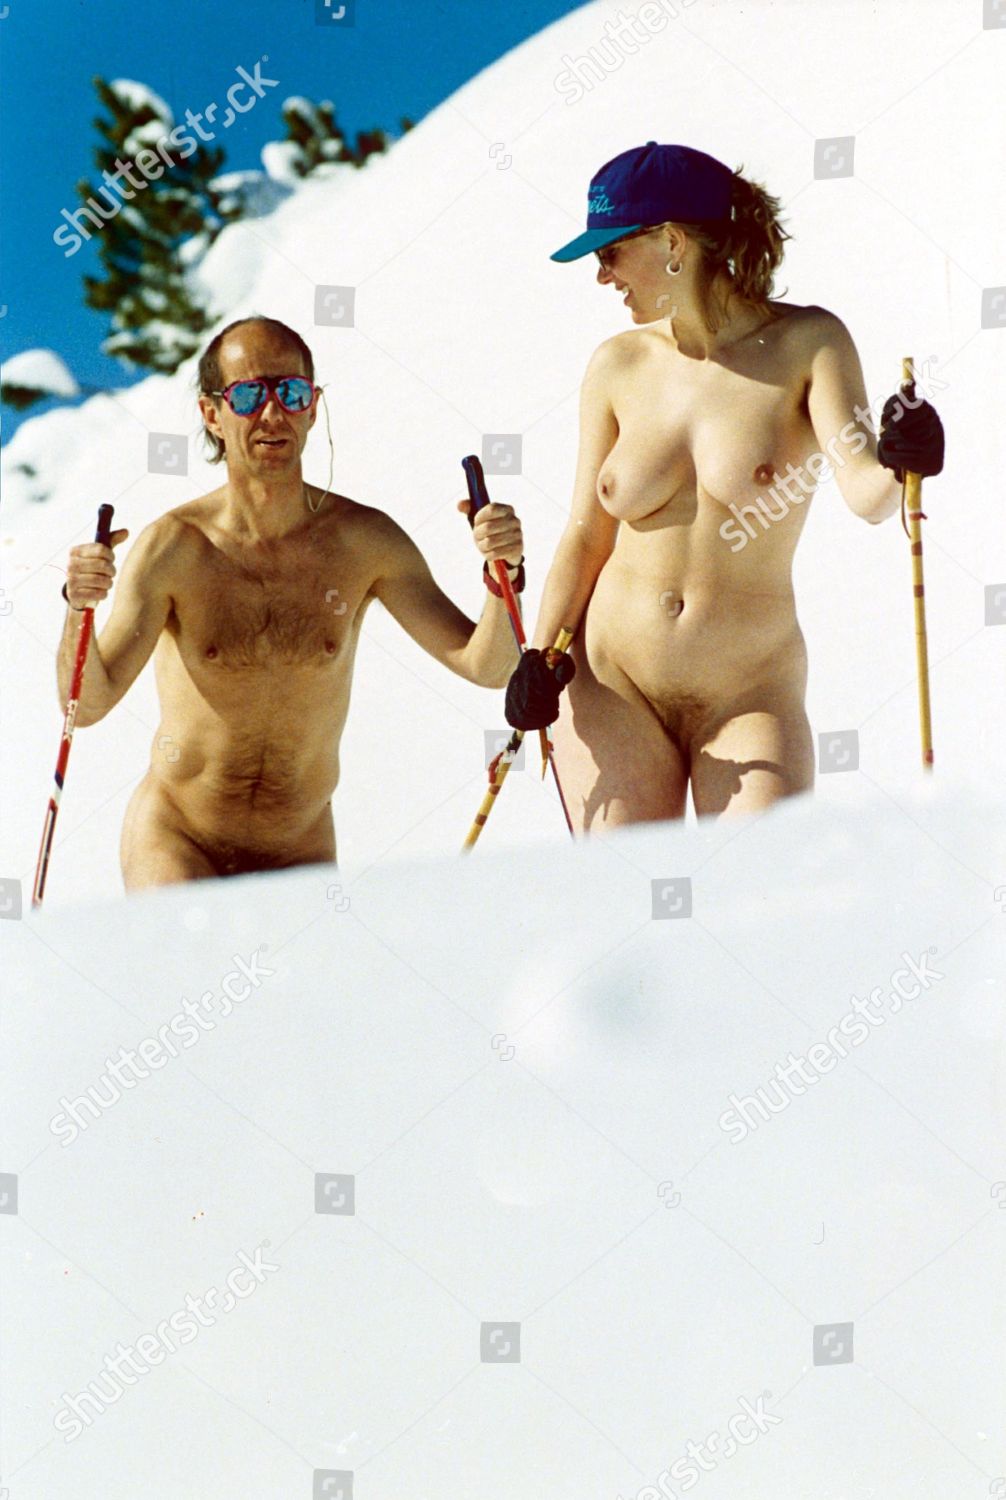 Nude Skier Redaktionelles Stockfoto Stockbild Shutterstock